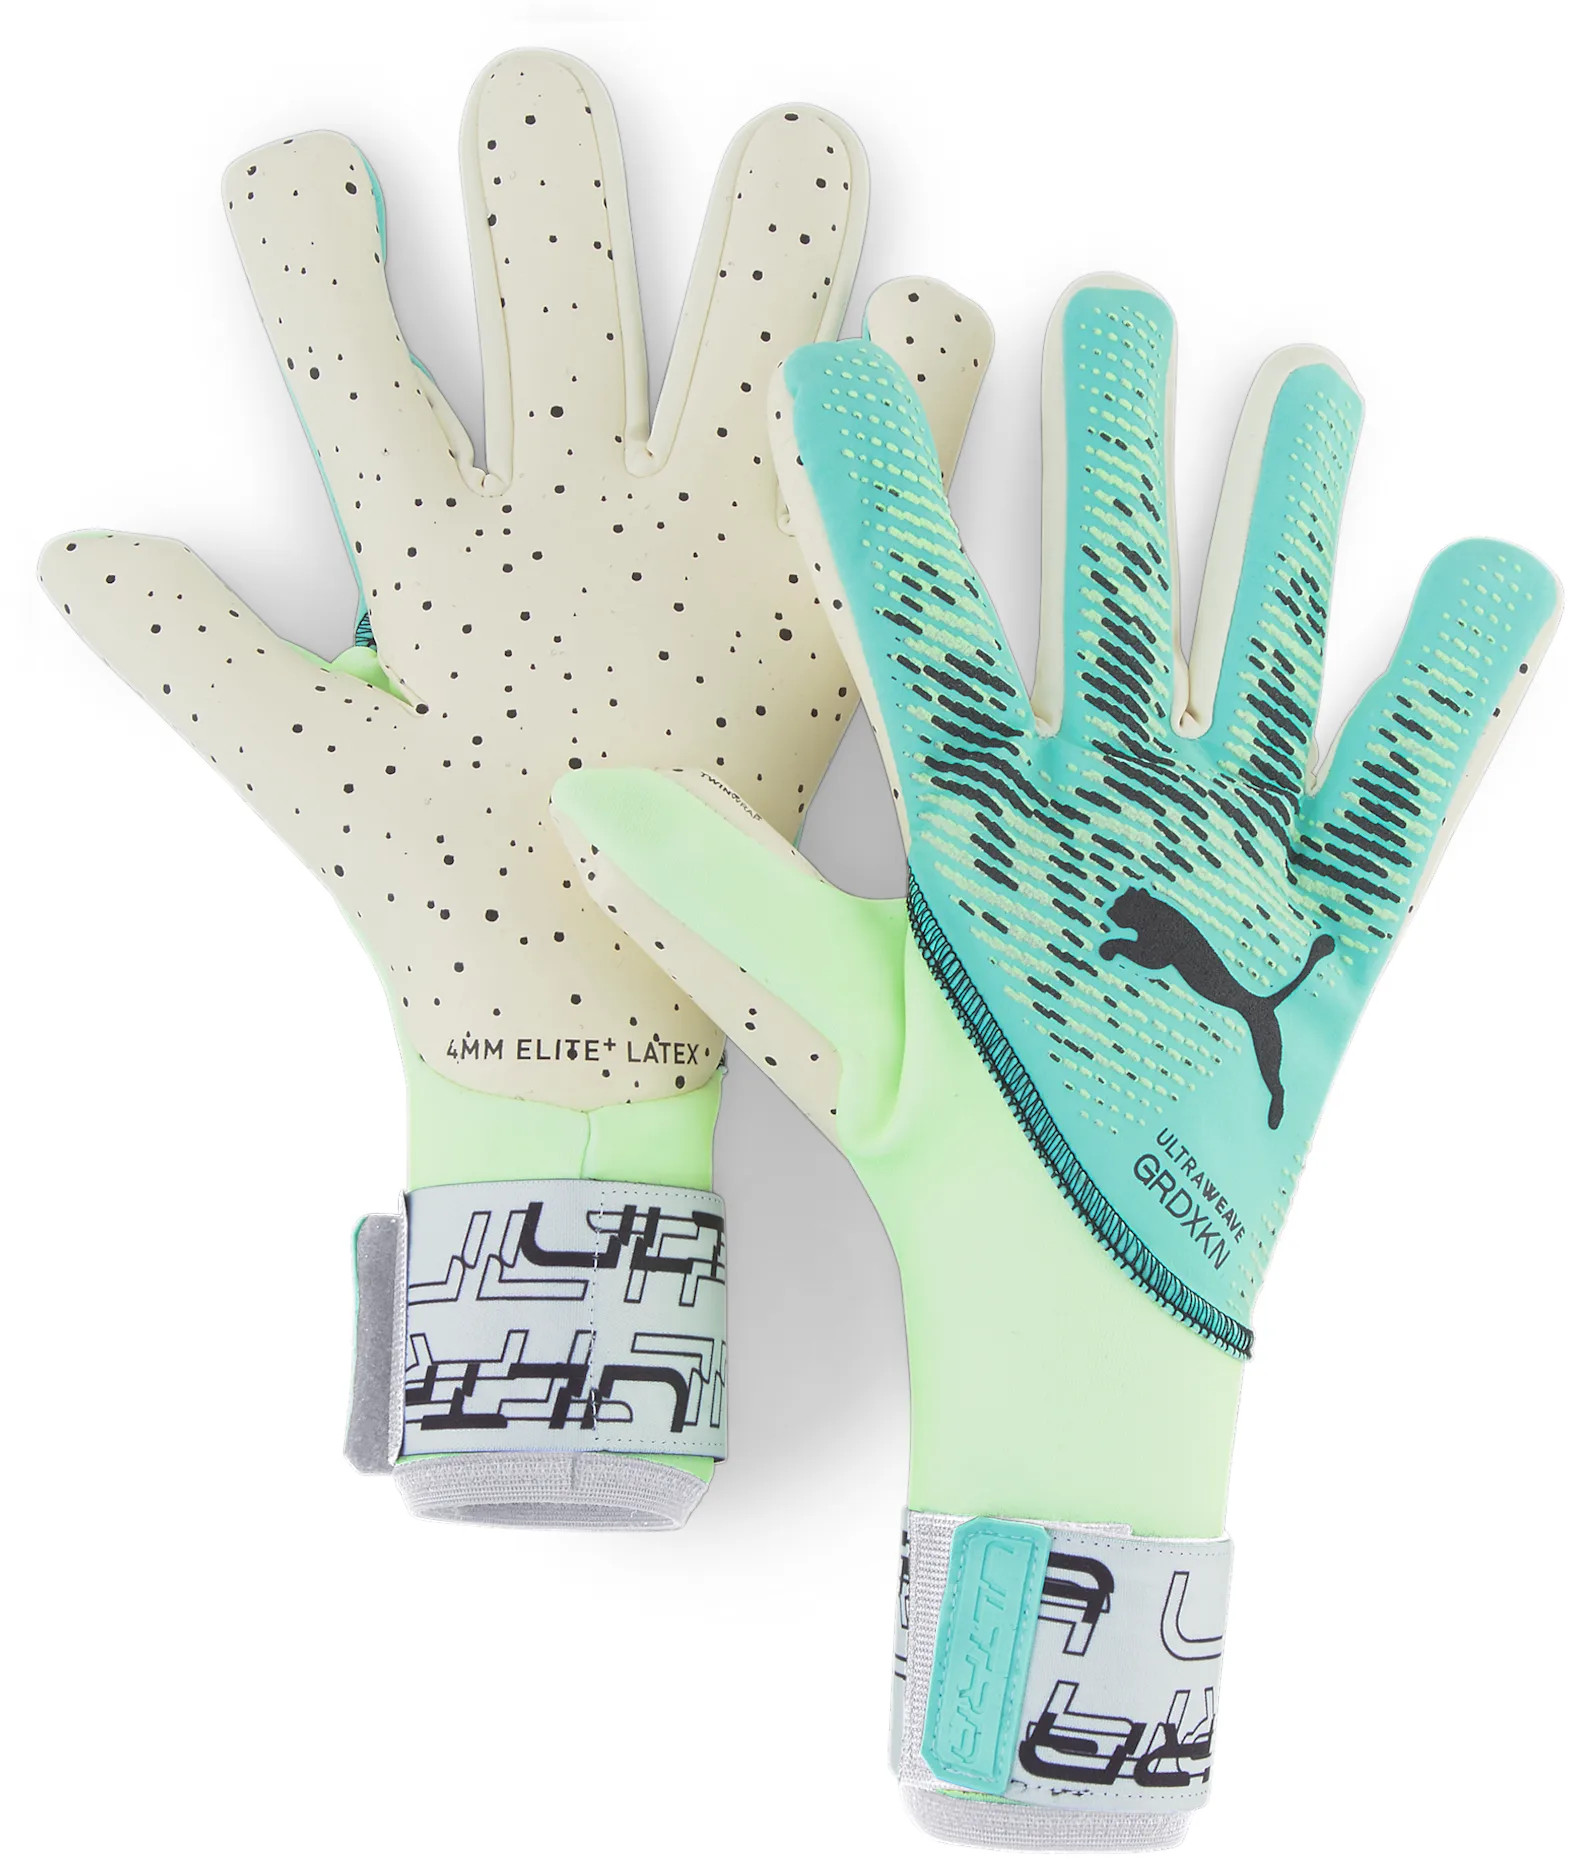 Goalkeeper's gloves Puma ULTRA Ultimate 1 NC